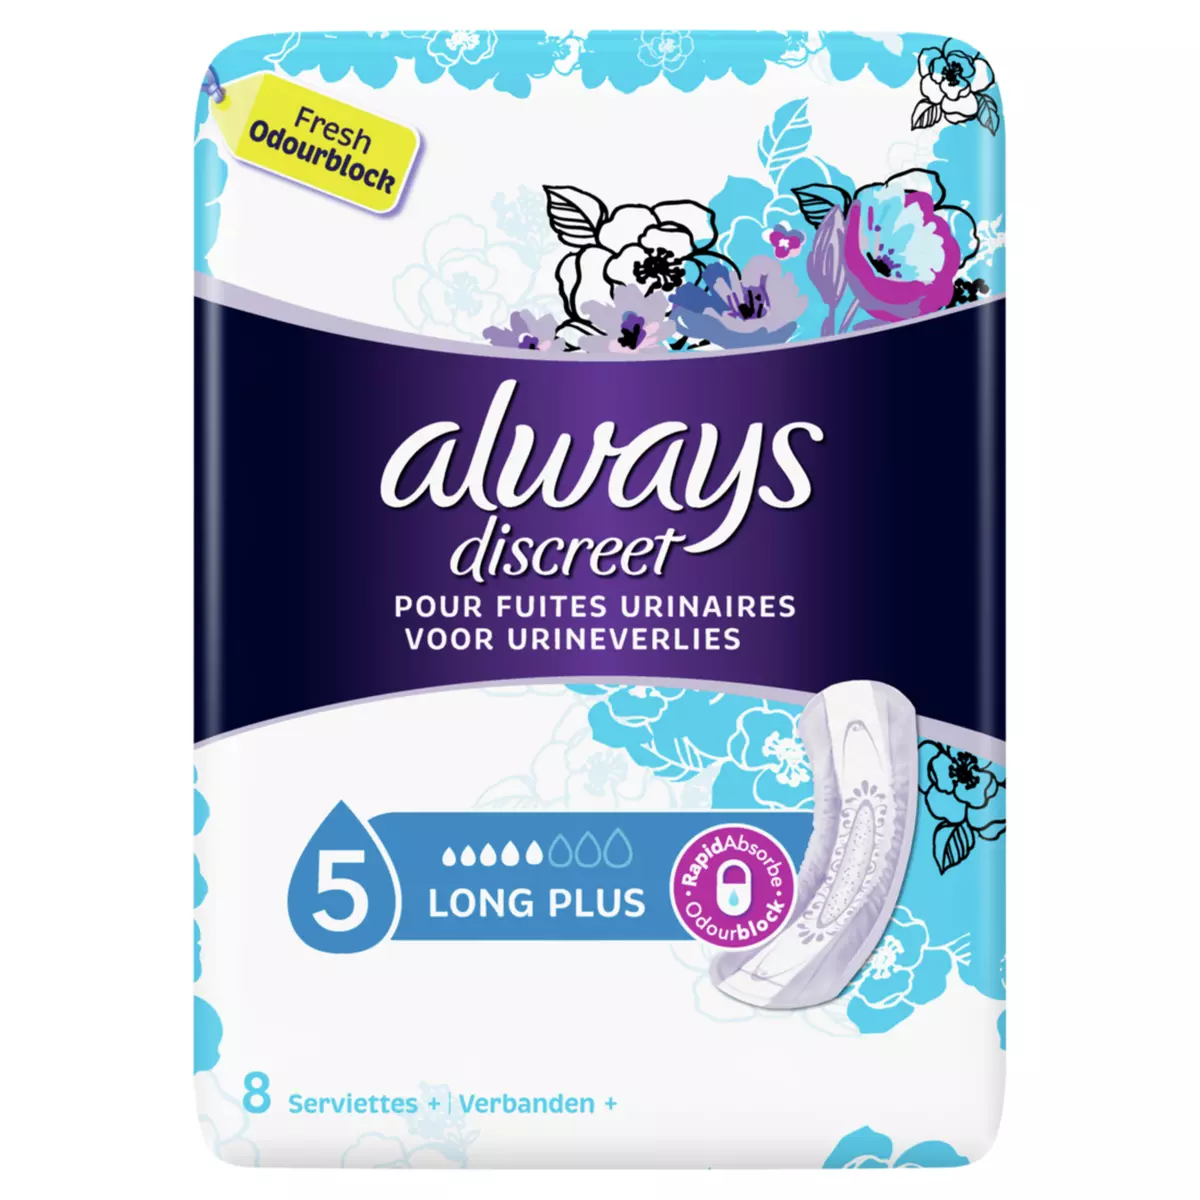 ALWAYS Serviettes hygiéniques pour fuites urinaires long plus 8 serviettes